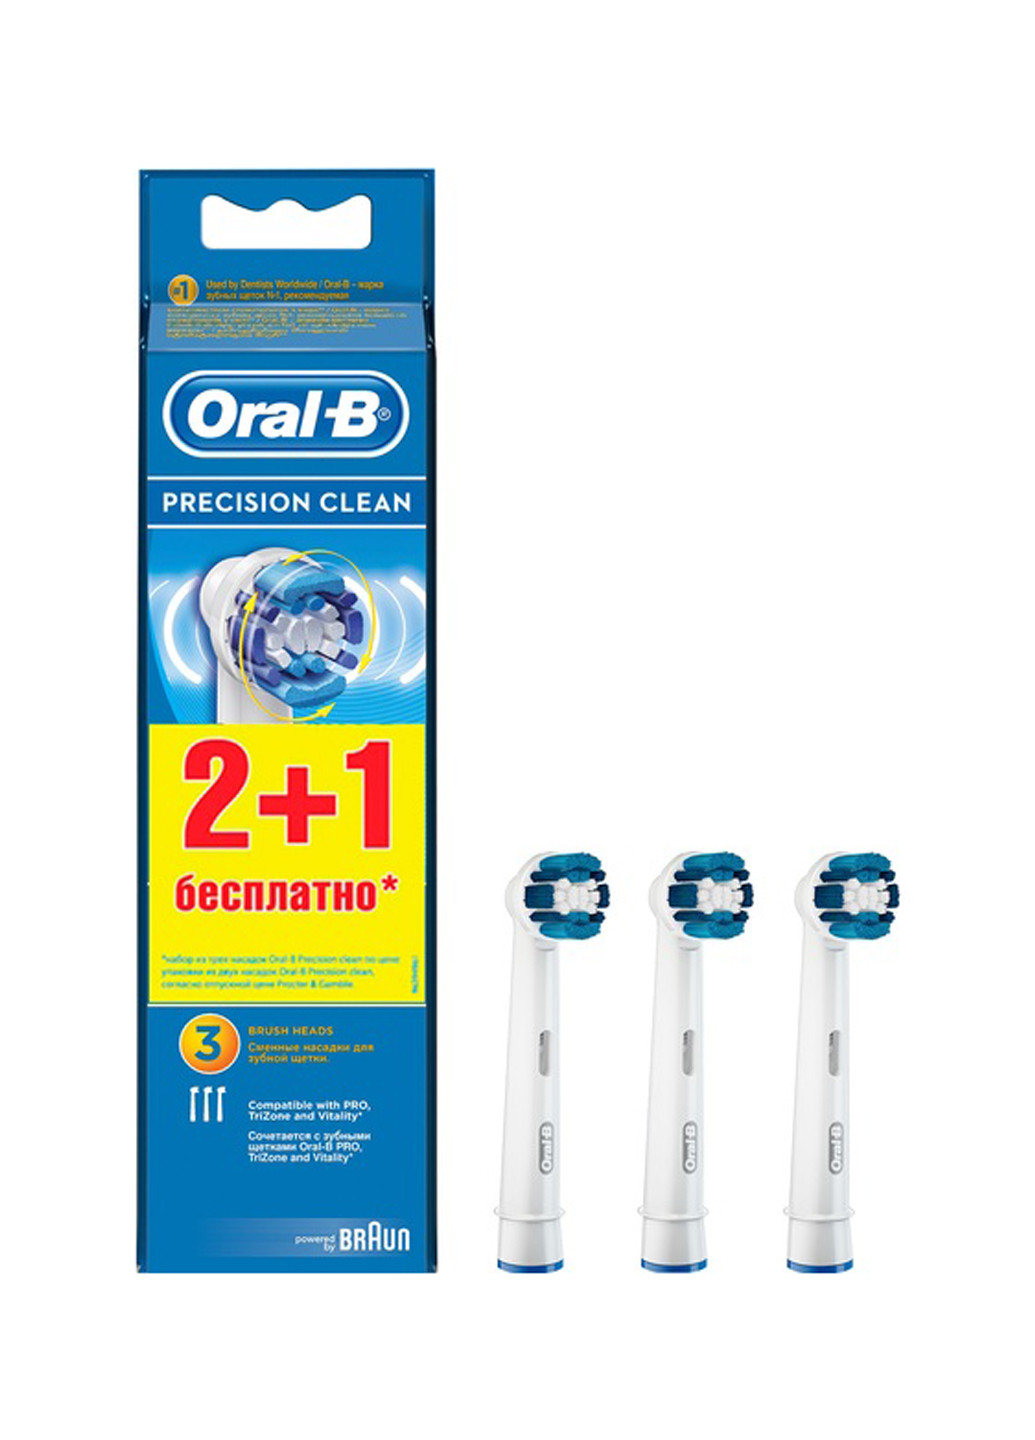 Зубная электрощетка Braun oral-b насадка prclean (2+1) (158551718)